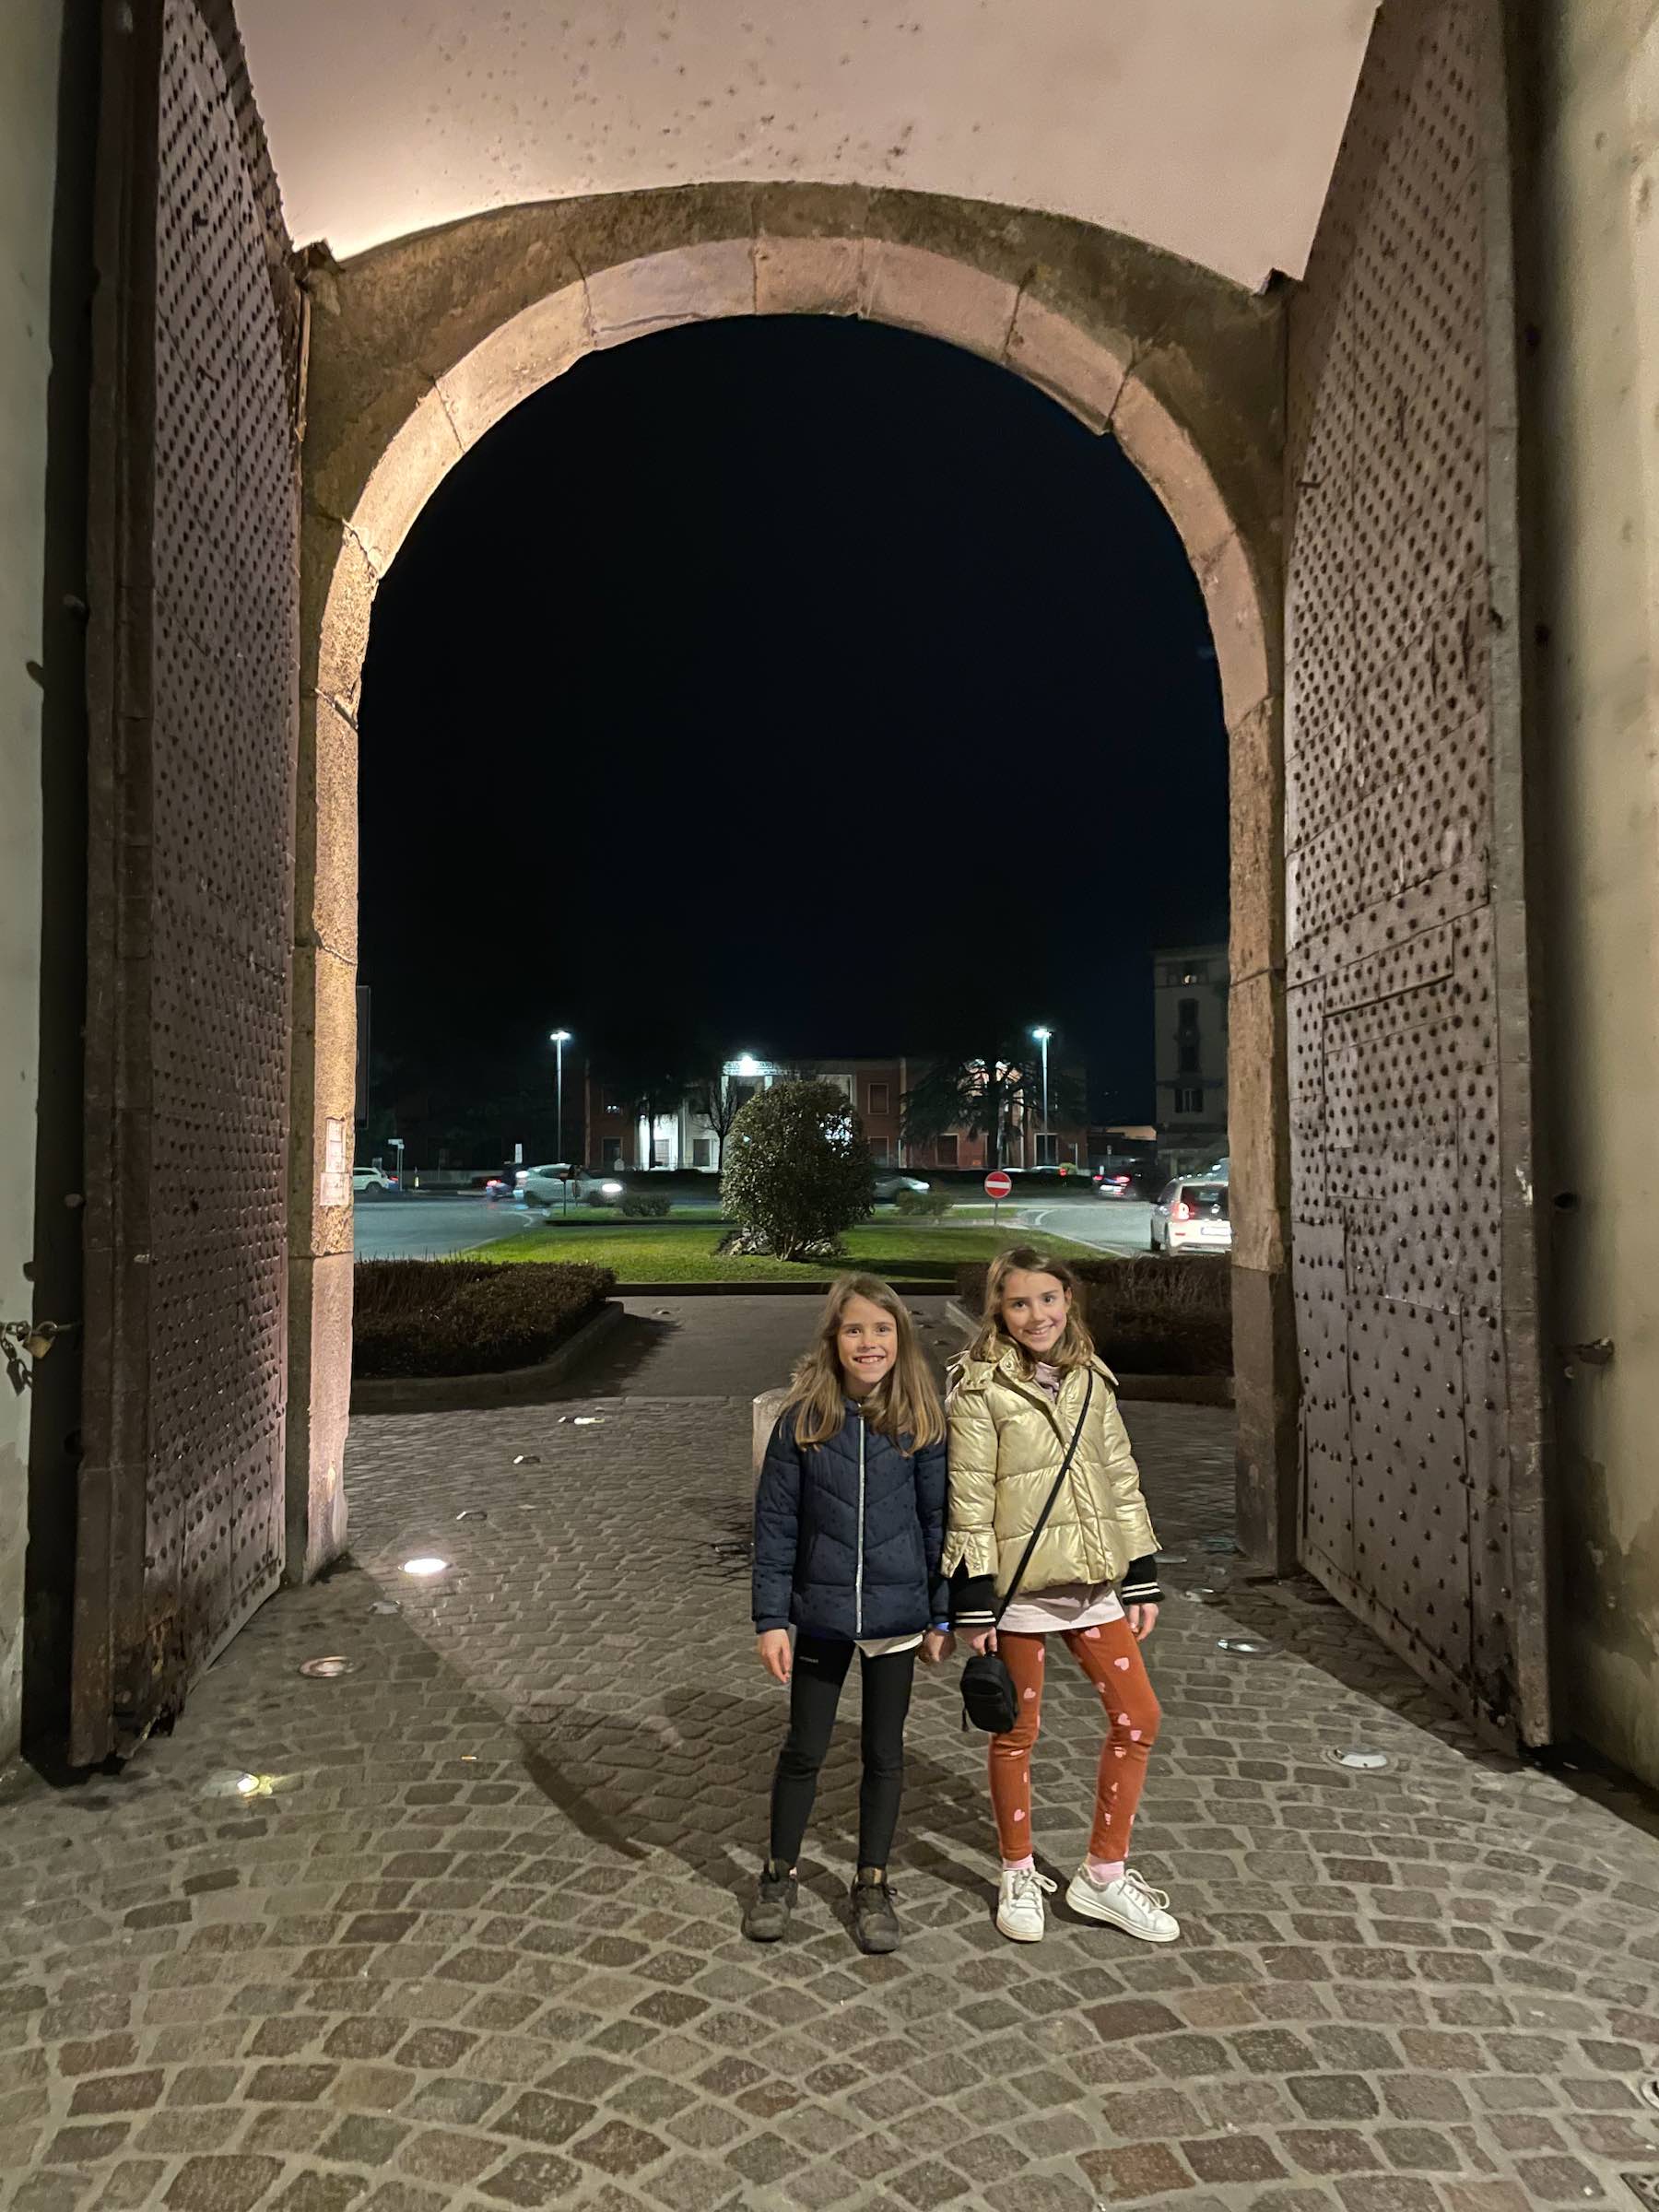 minhas filhas Aurora e Gaia, pequenas diante da grandiosidade das portas no centro histórico de Lucca